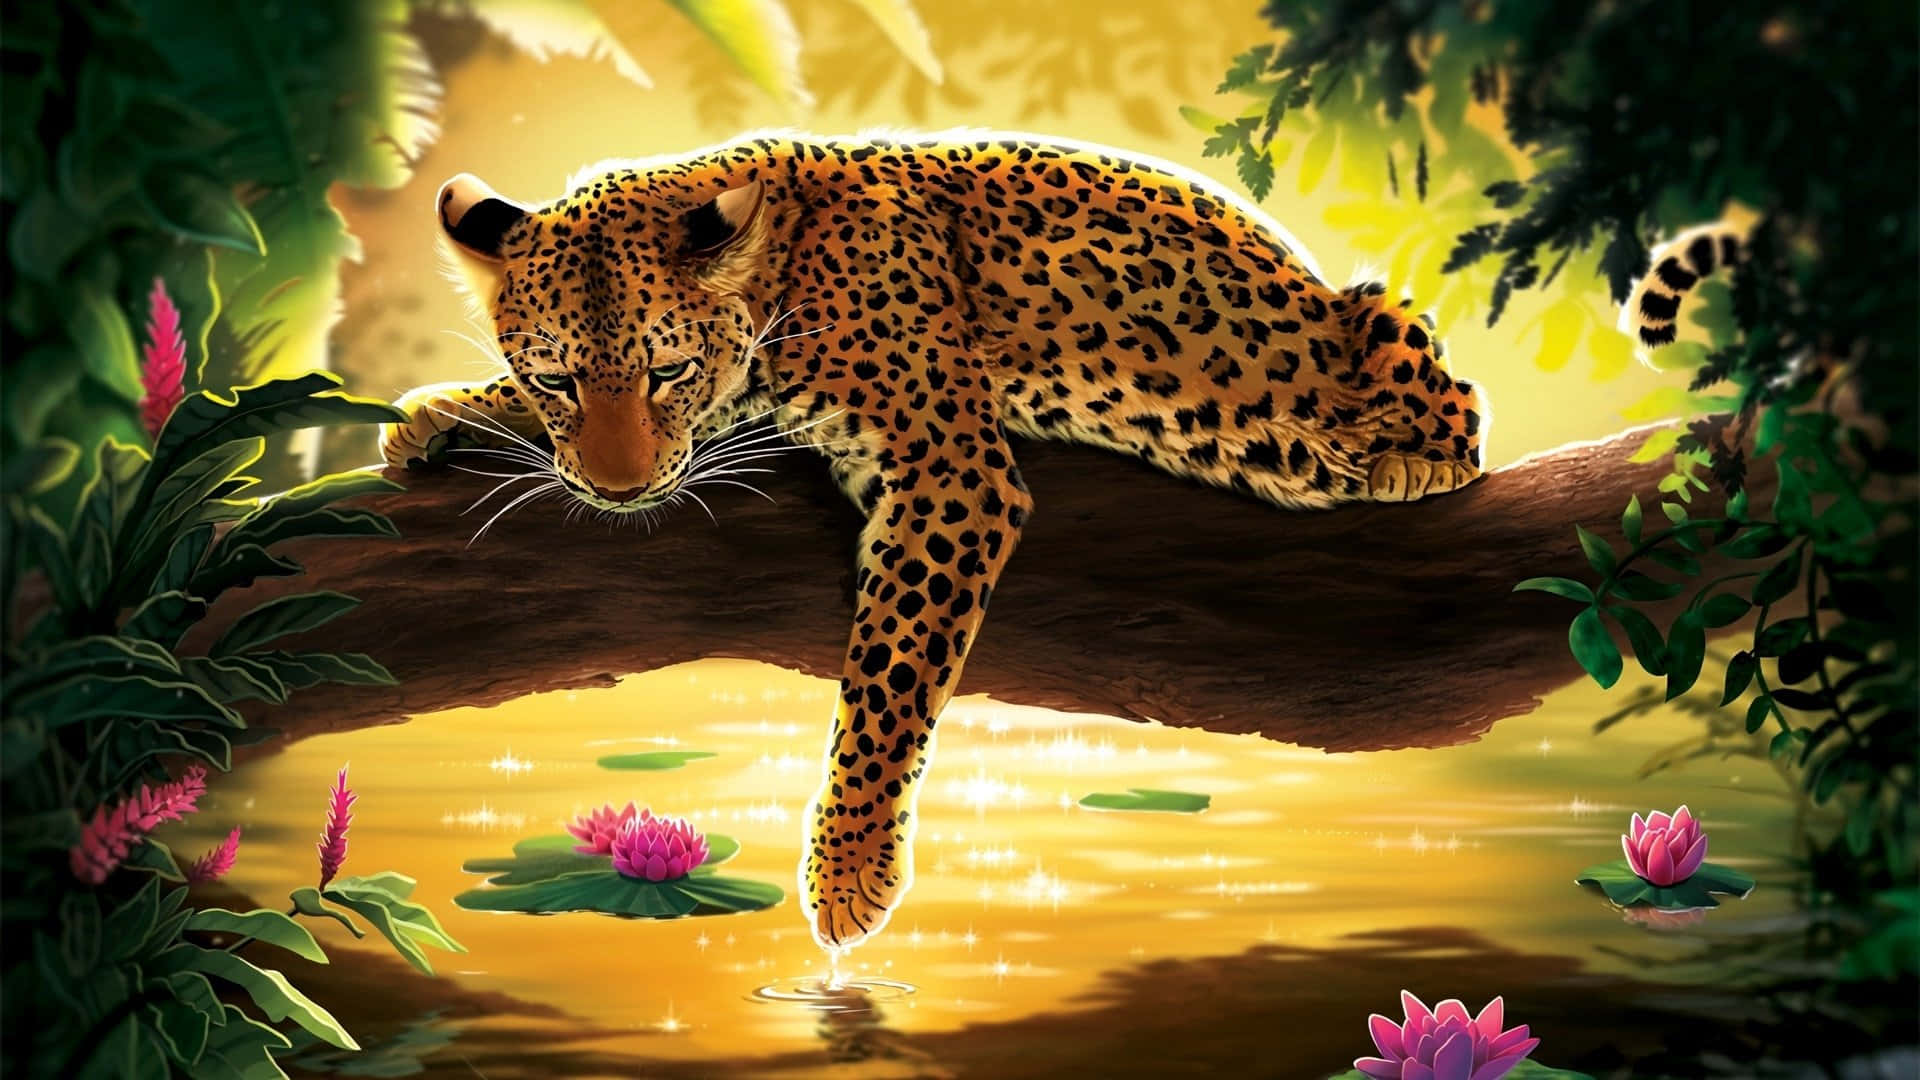 Leoparderströvar Fritt I Naturen.